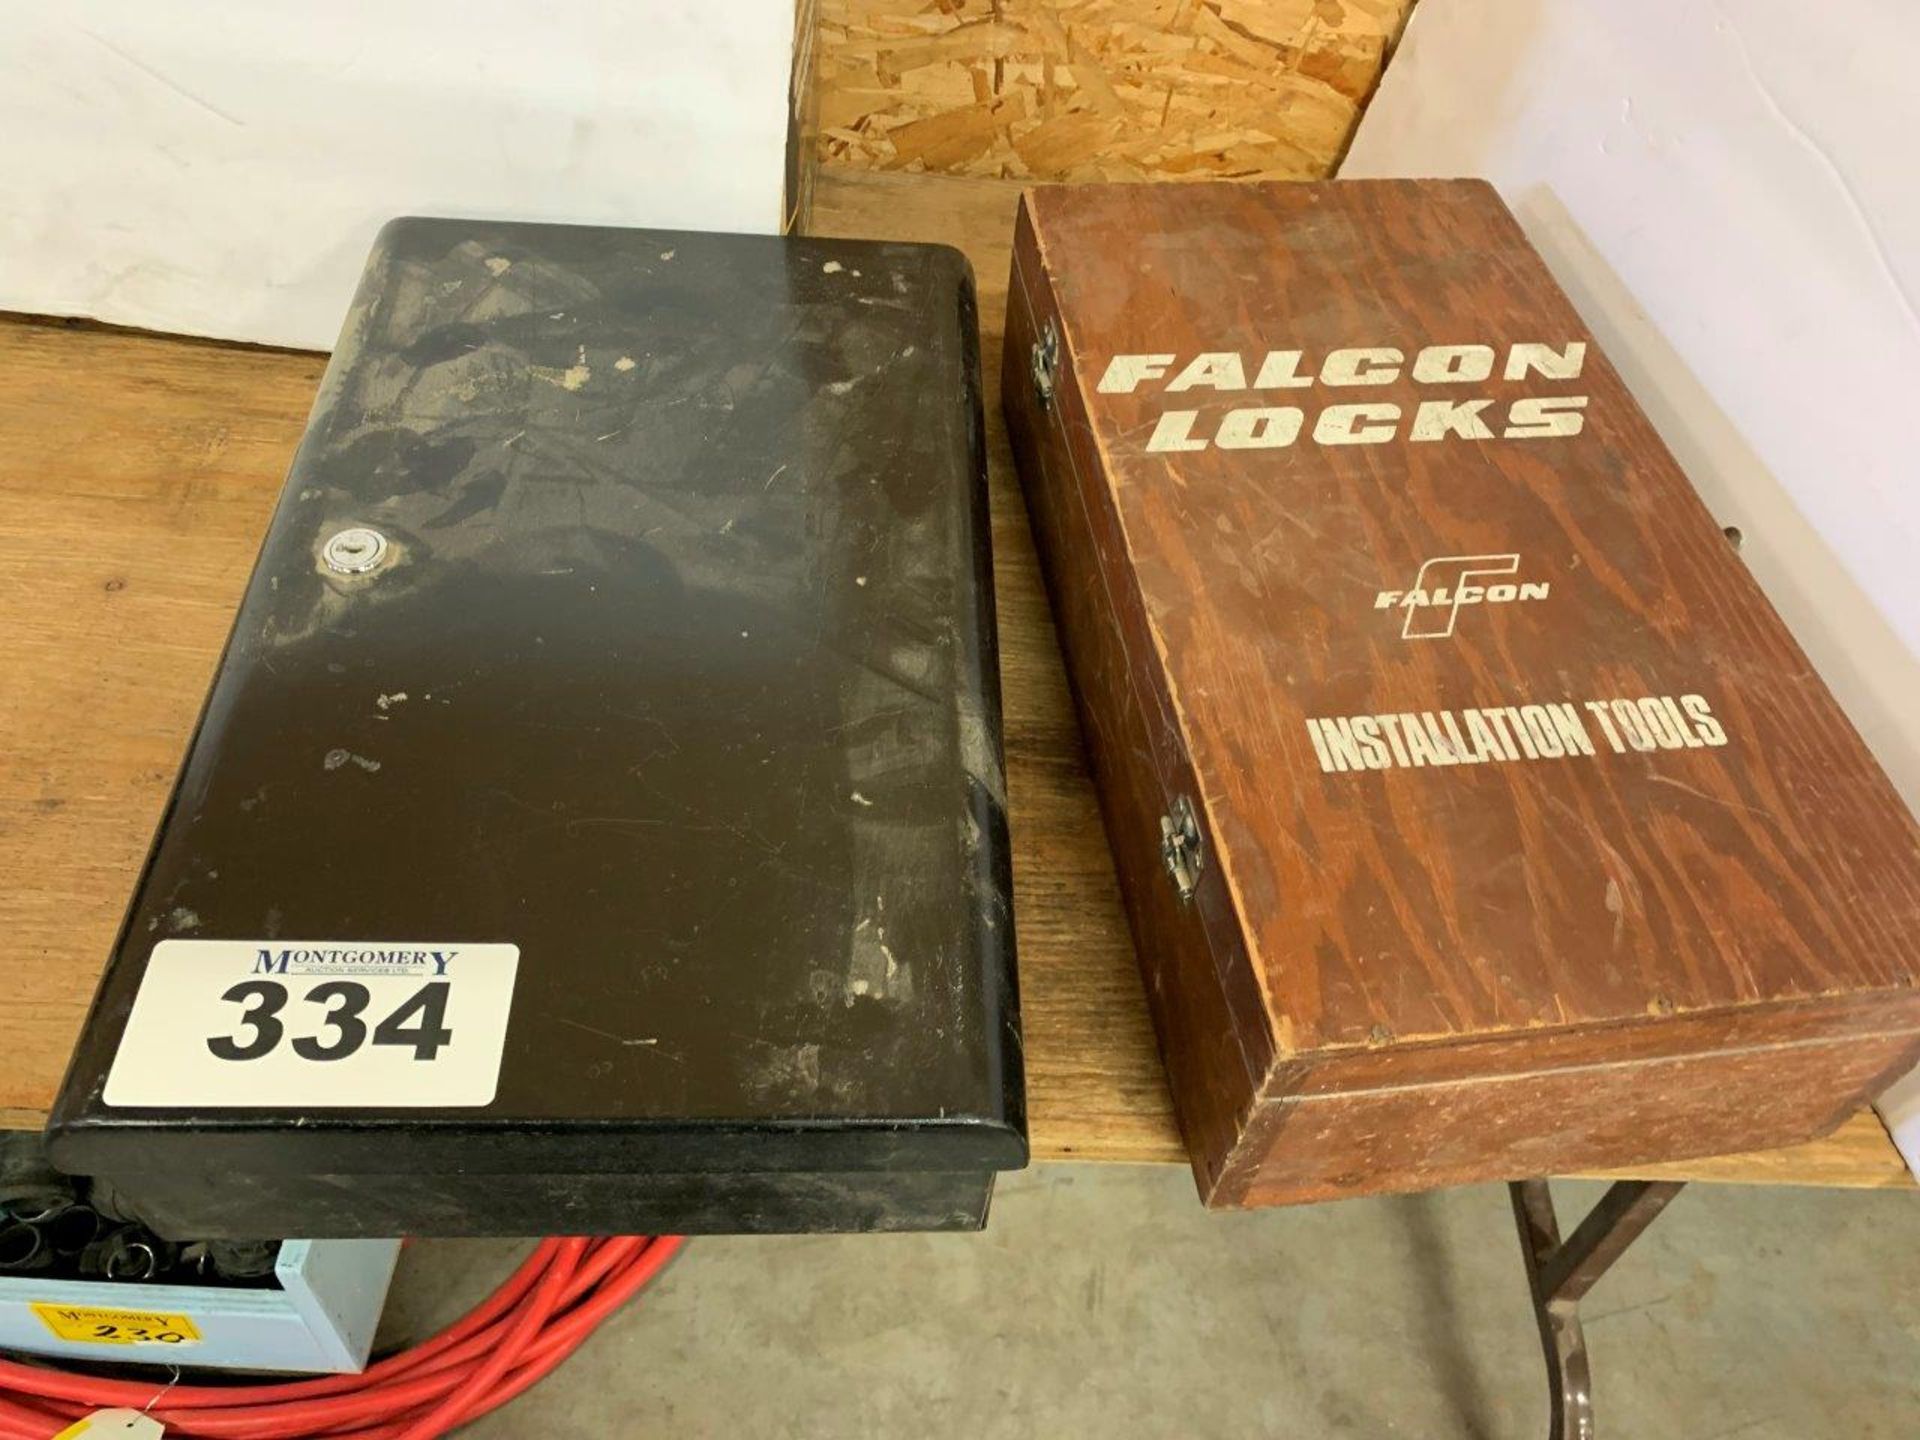 LOCK BOX (NO KEY) AND FALCON LOCKS INSTALL TOOL KIT